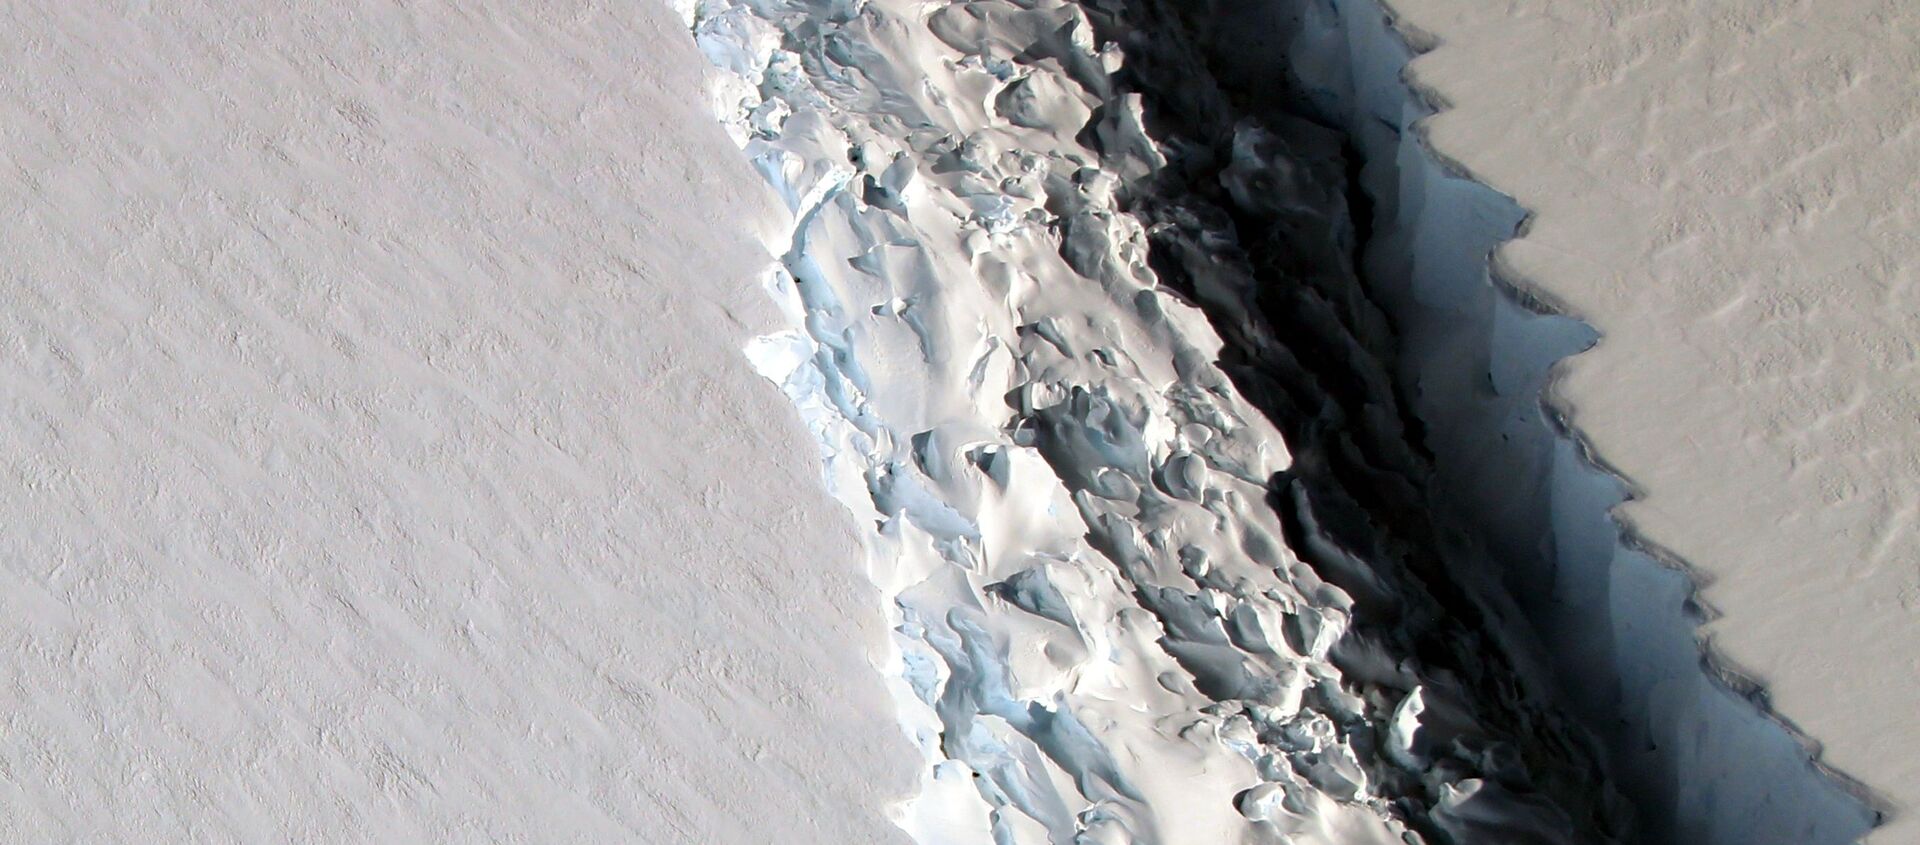 صورة لانشقاق جبل جليدي لارسن س (Larsen C) قبالة سواحل القارة القطبية الجنوبية، 10 نوفمبر/ تشرين الثاني 2016 - سبوتنيك عربي, 1920, 27.02.2021